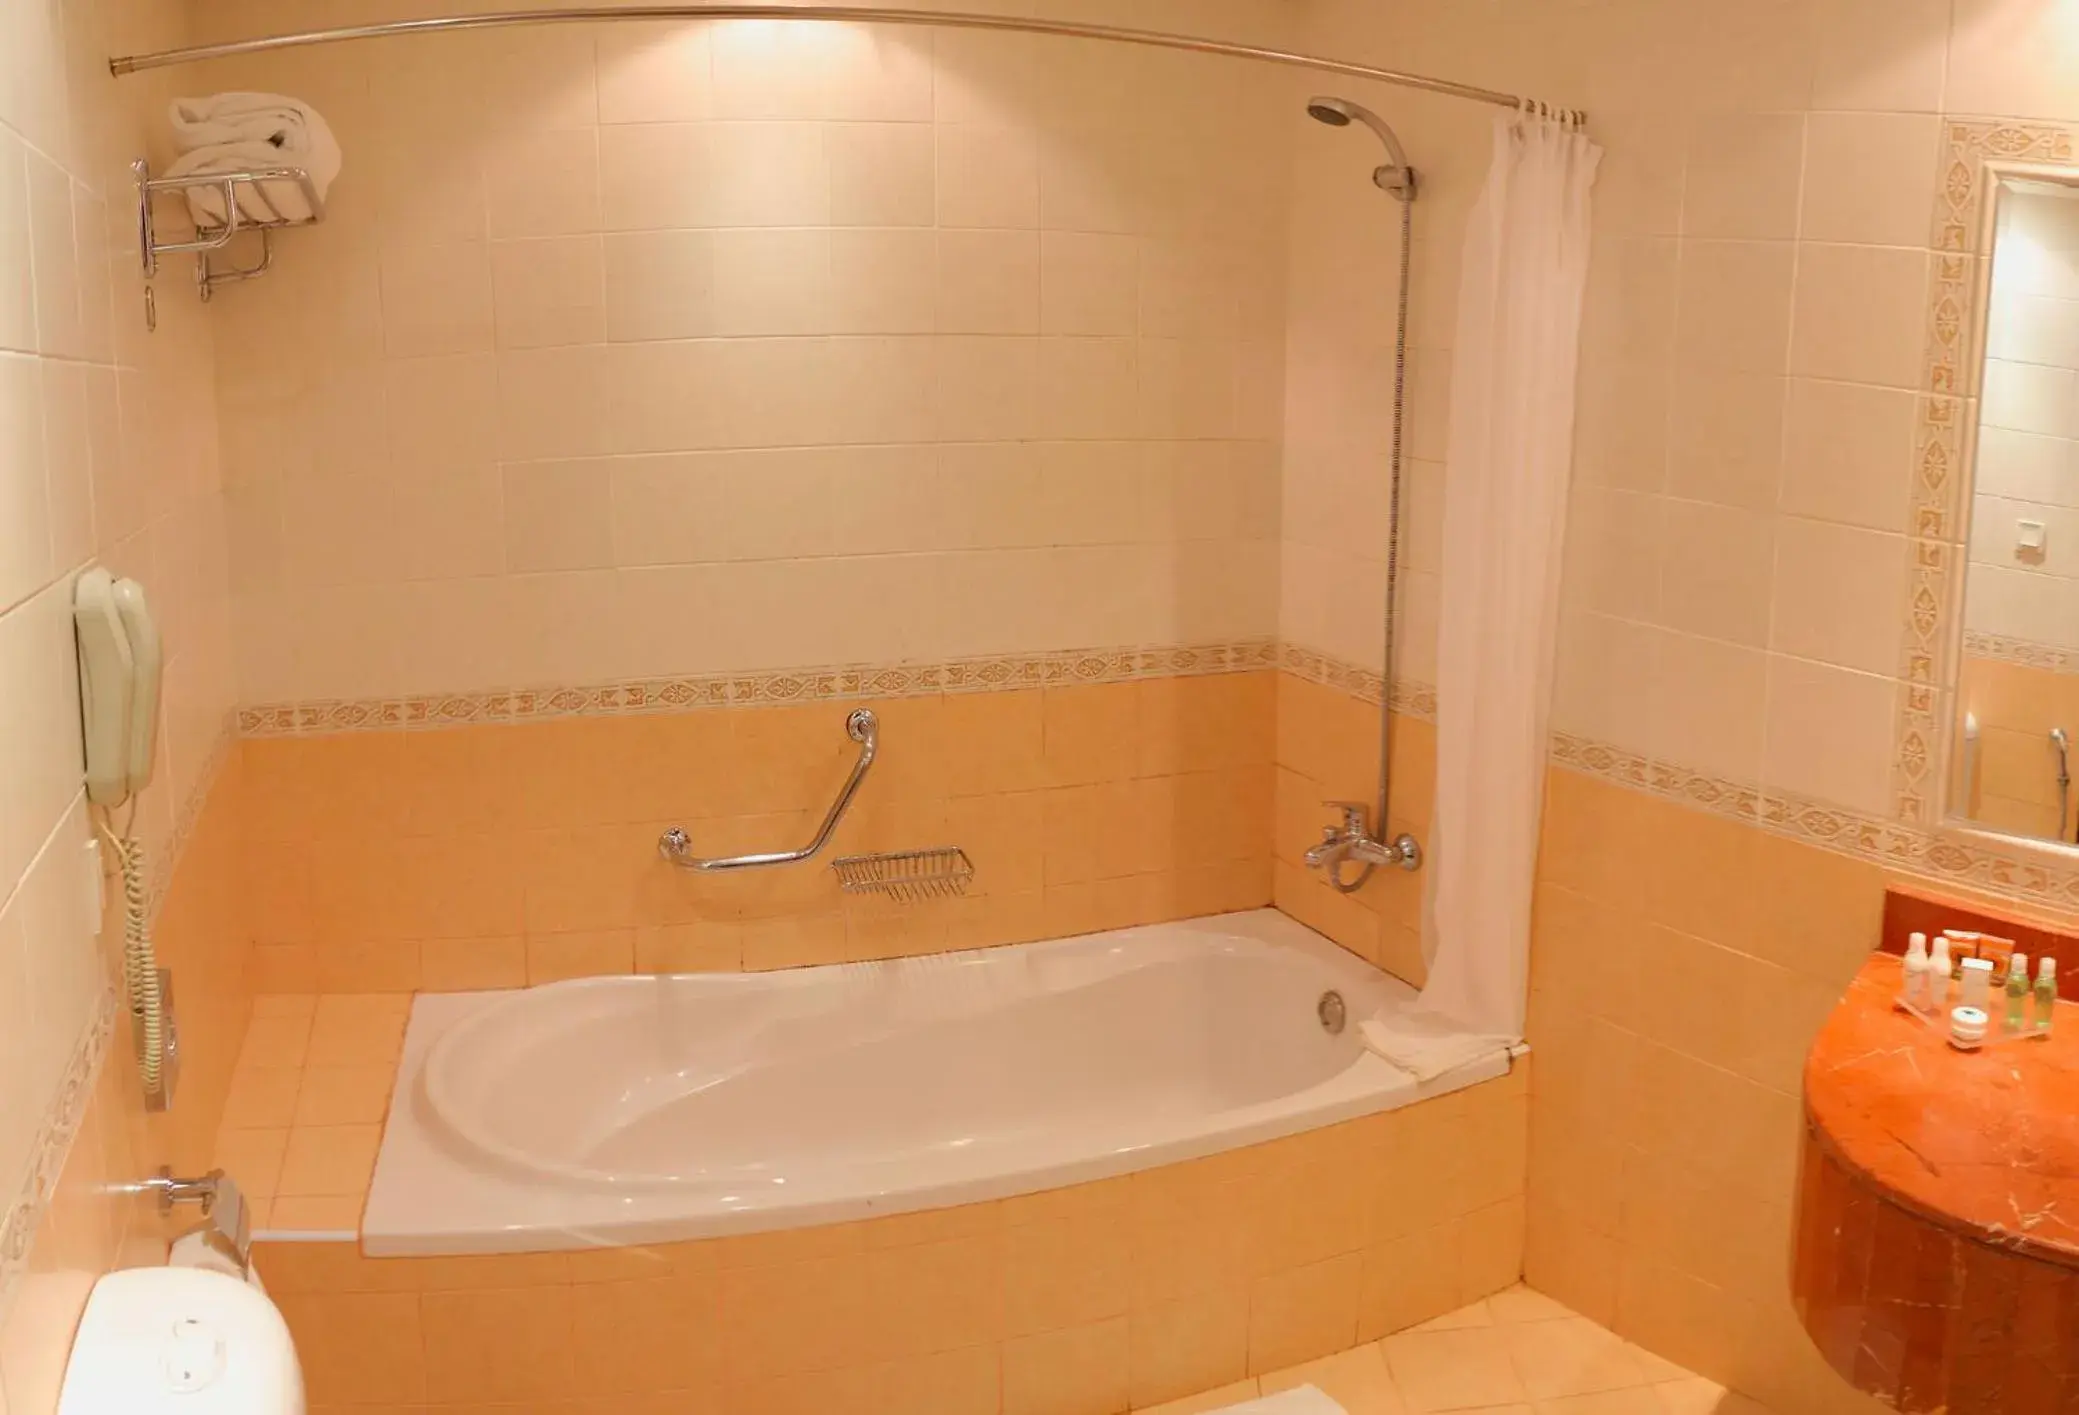 Bathroom in Sharjah Premiere Hotel & Resort